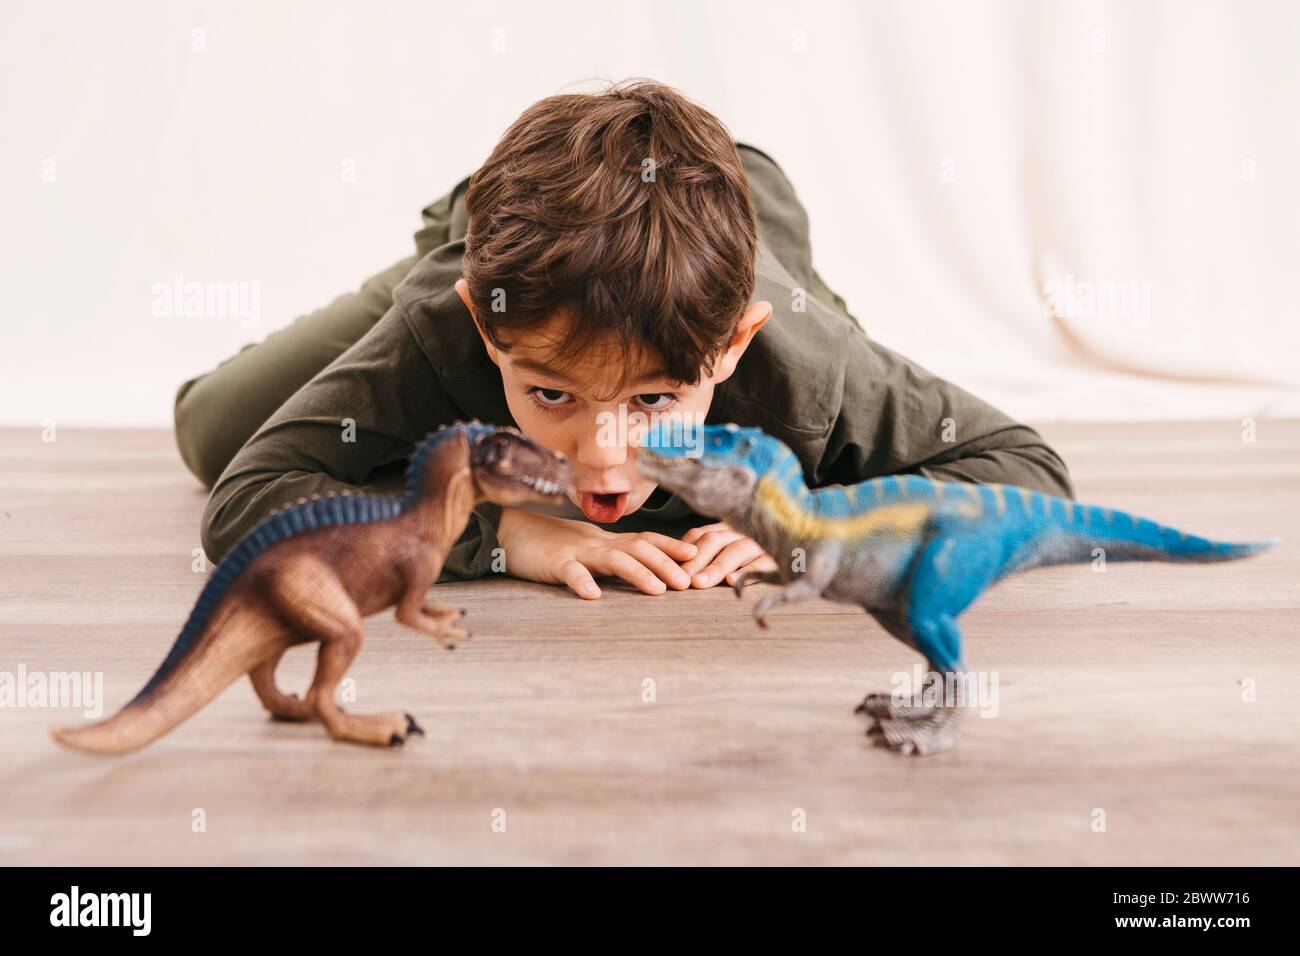 Retrato de un niño agachado en el suelo jugando con los dinosaurios de juguete Foto de stock